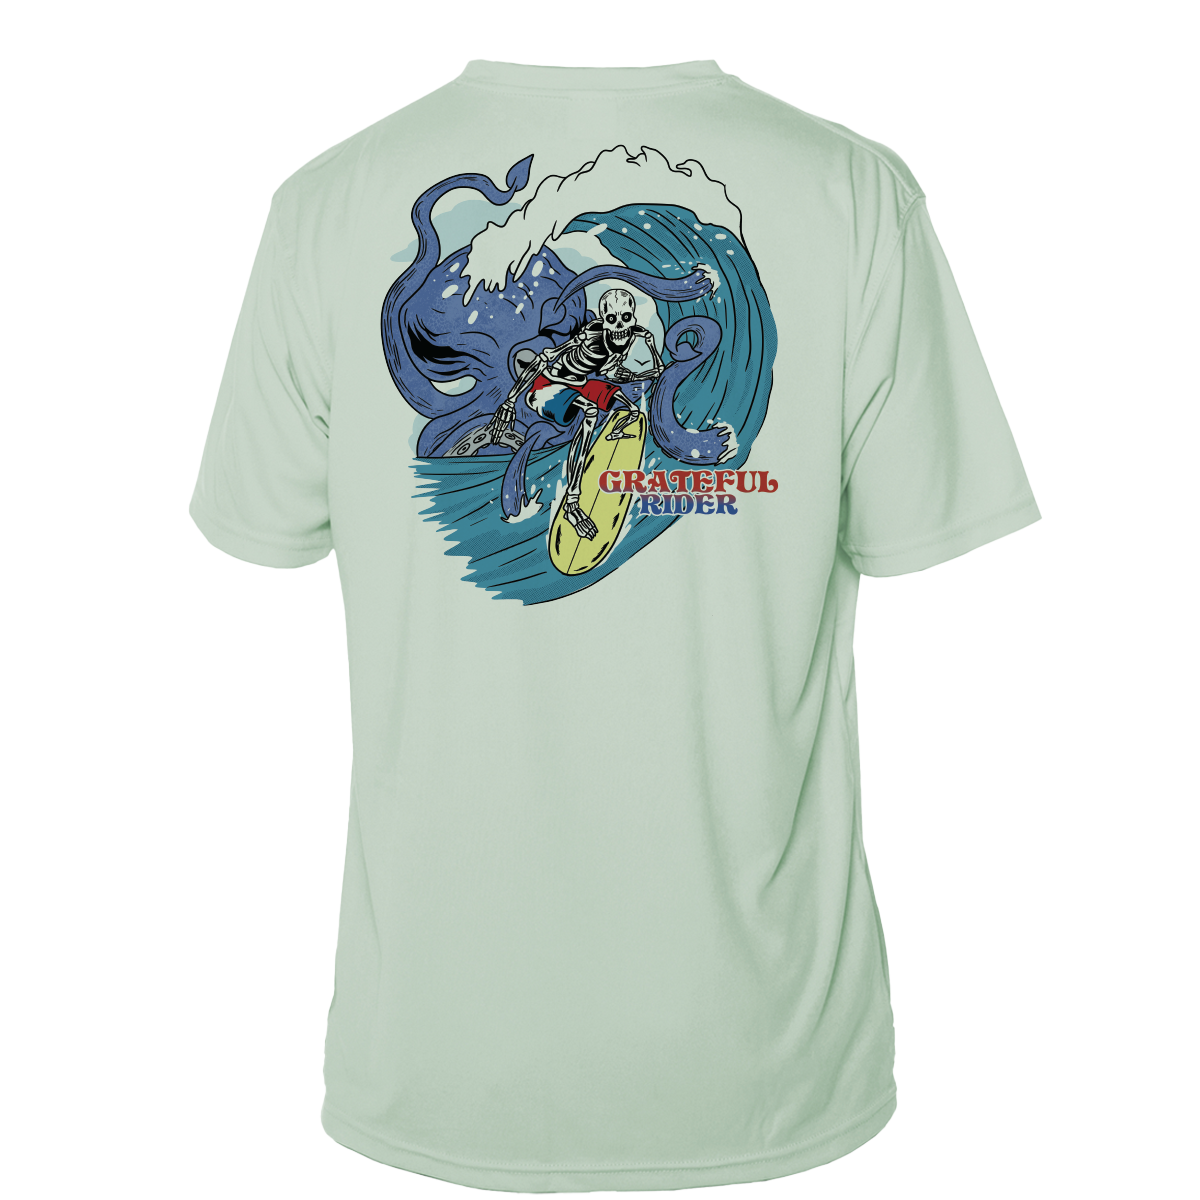 Grateful Rider Outride the Kraken Short Sleeve UV Shirt